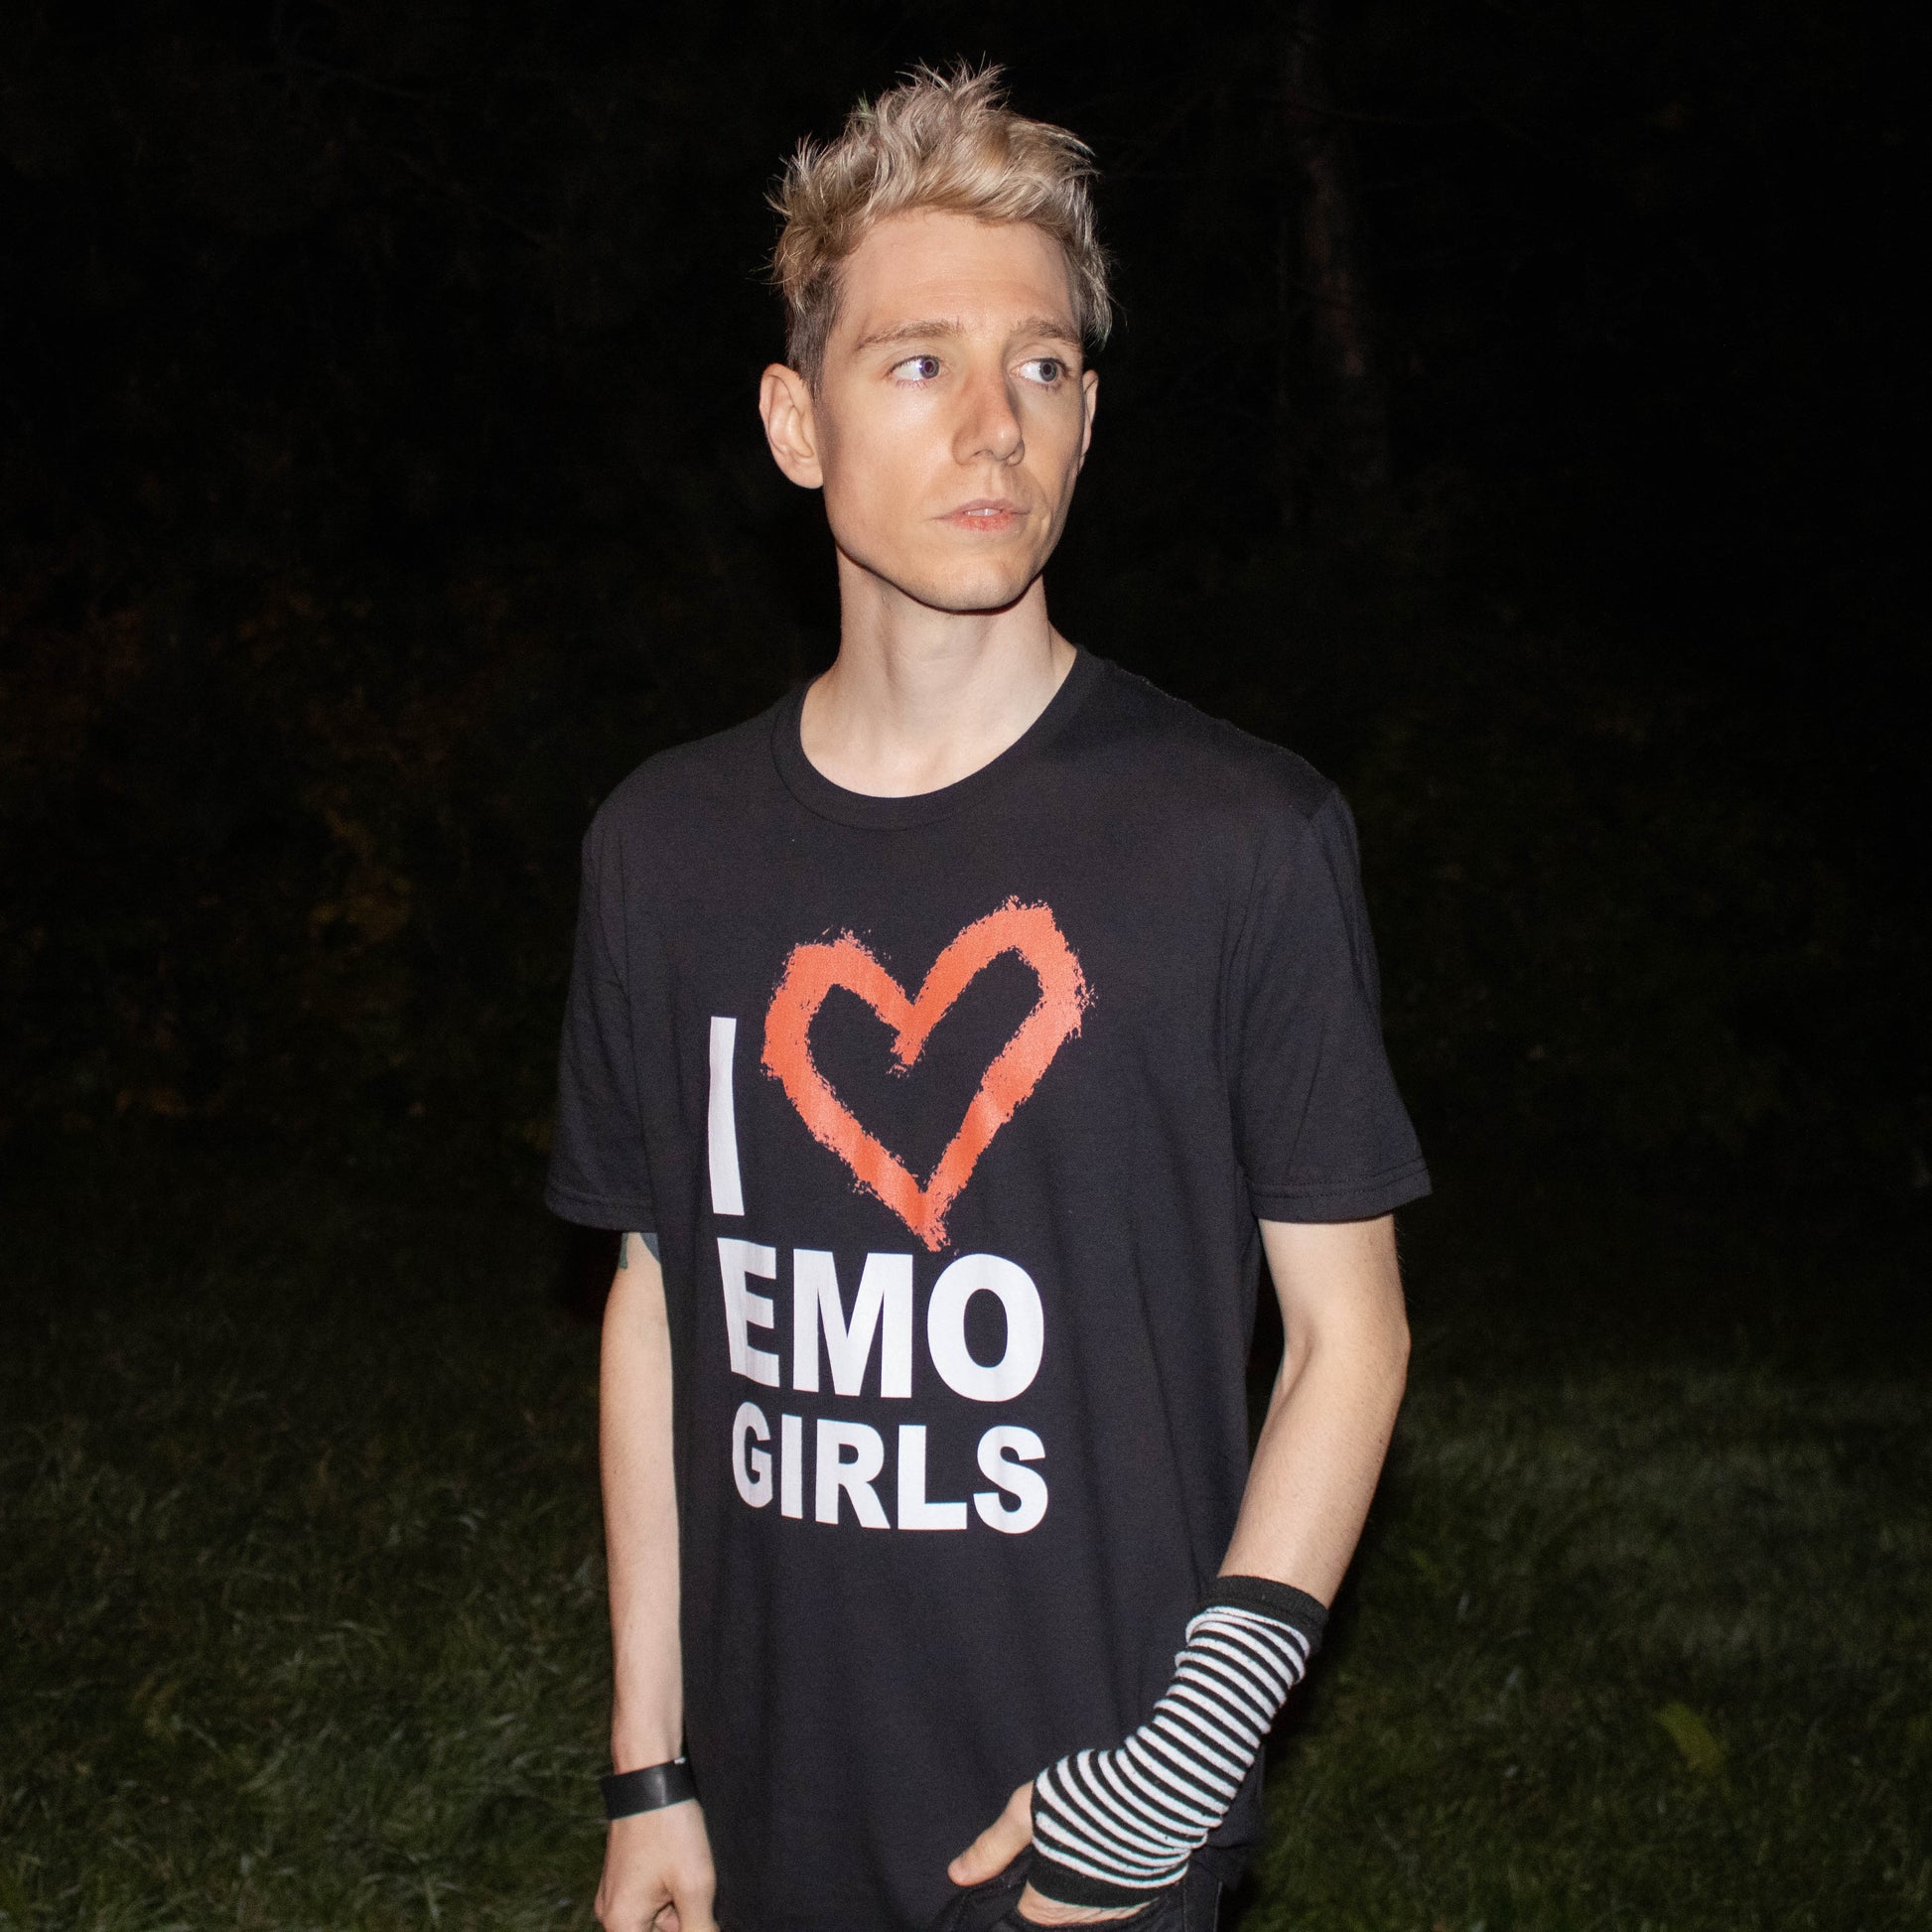  I Love Emo Girls - I Heart Emo Girls T-Shirt